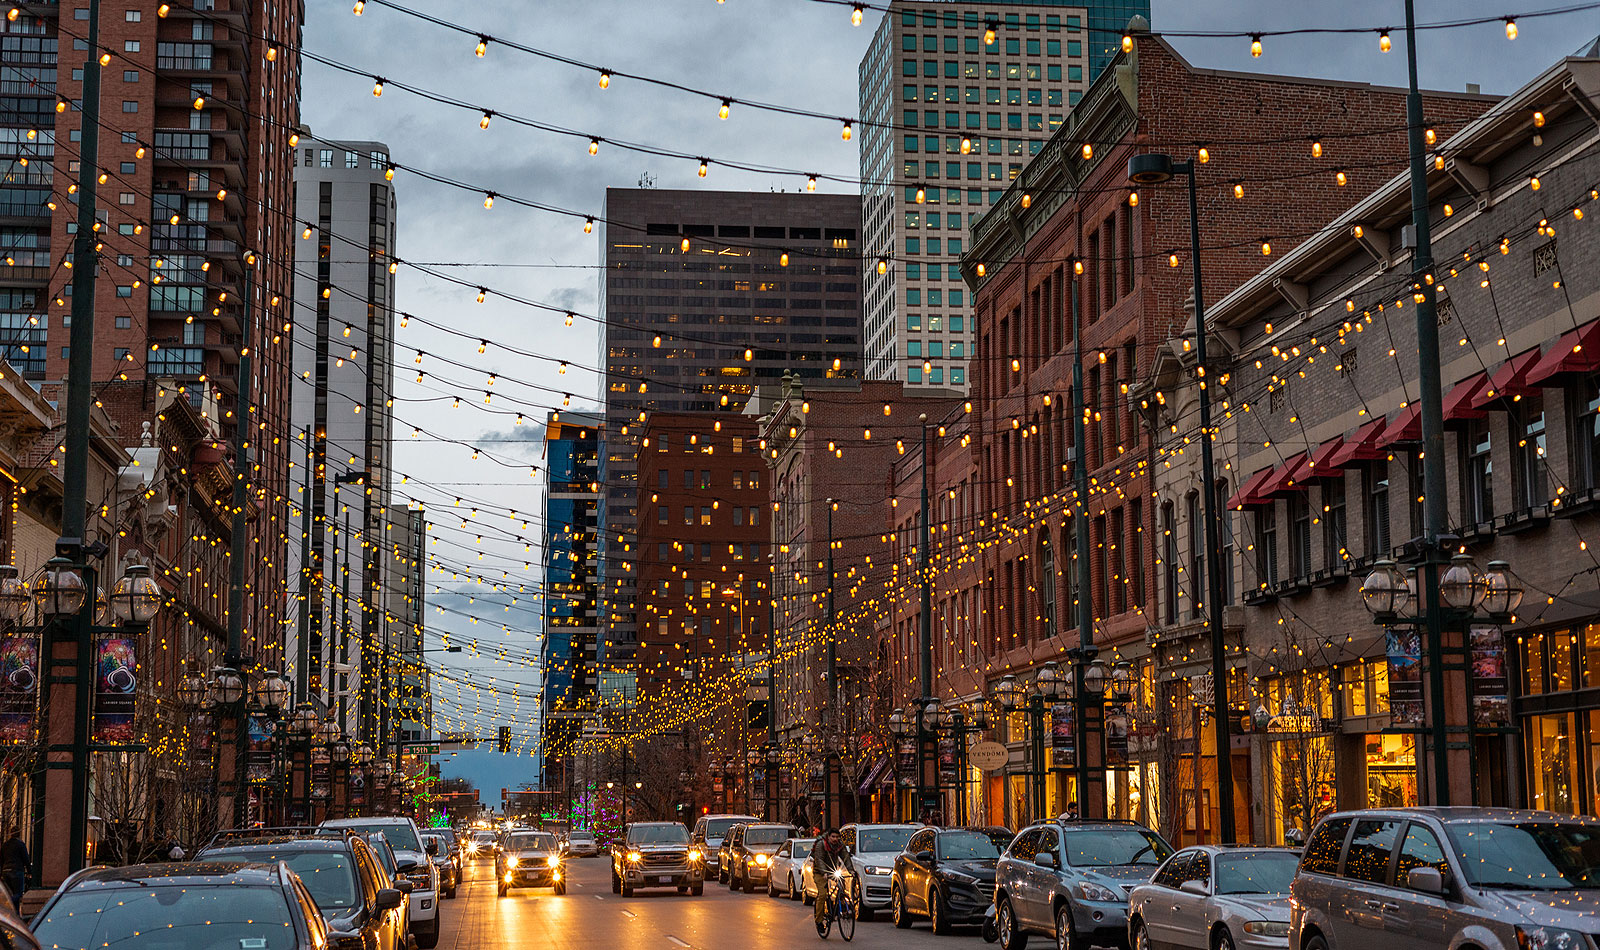 Festive street of Denver